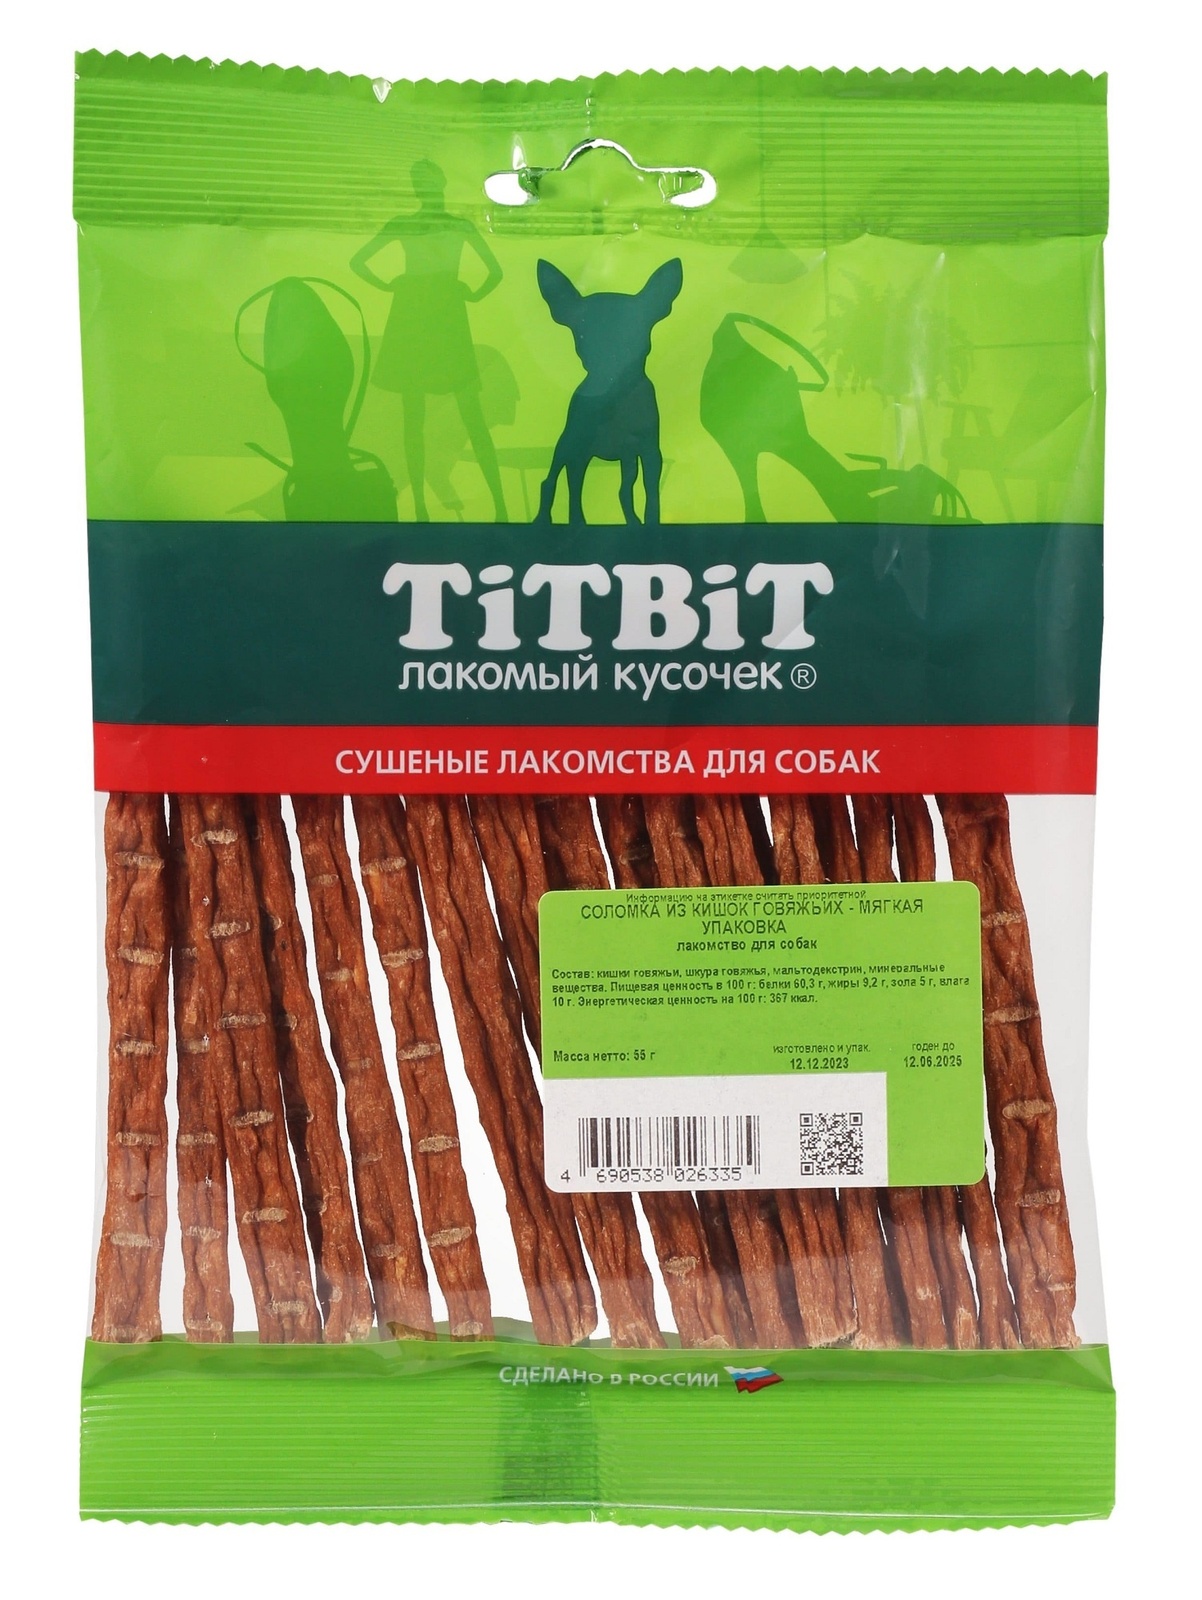 TiTBiT TiTBiT соломка из кишок говяжьих - мягкая упаковка (50 г) titbit titbit соломка мини мягкая упаковка 75 г